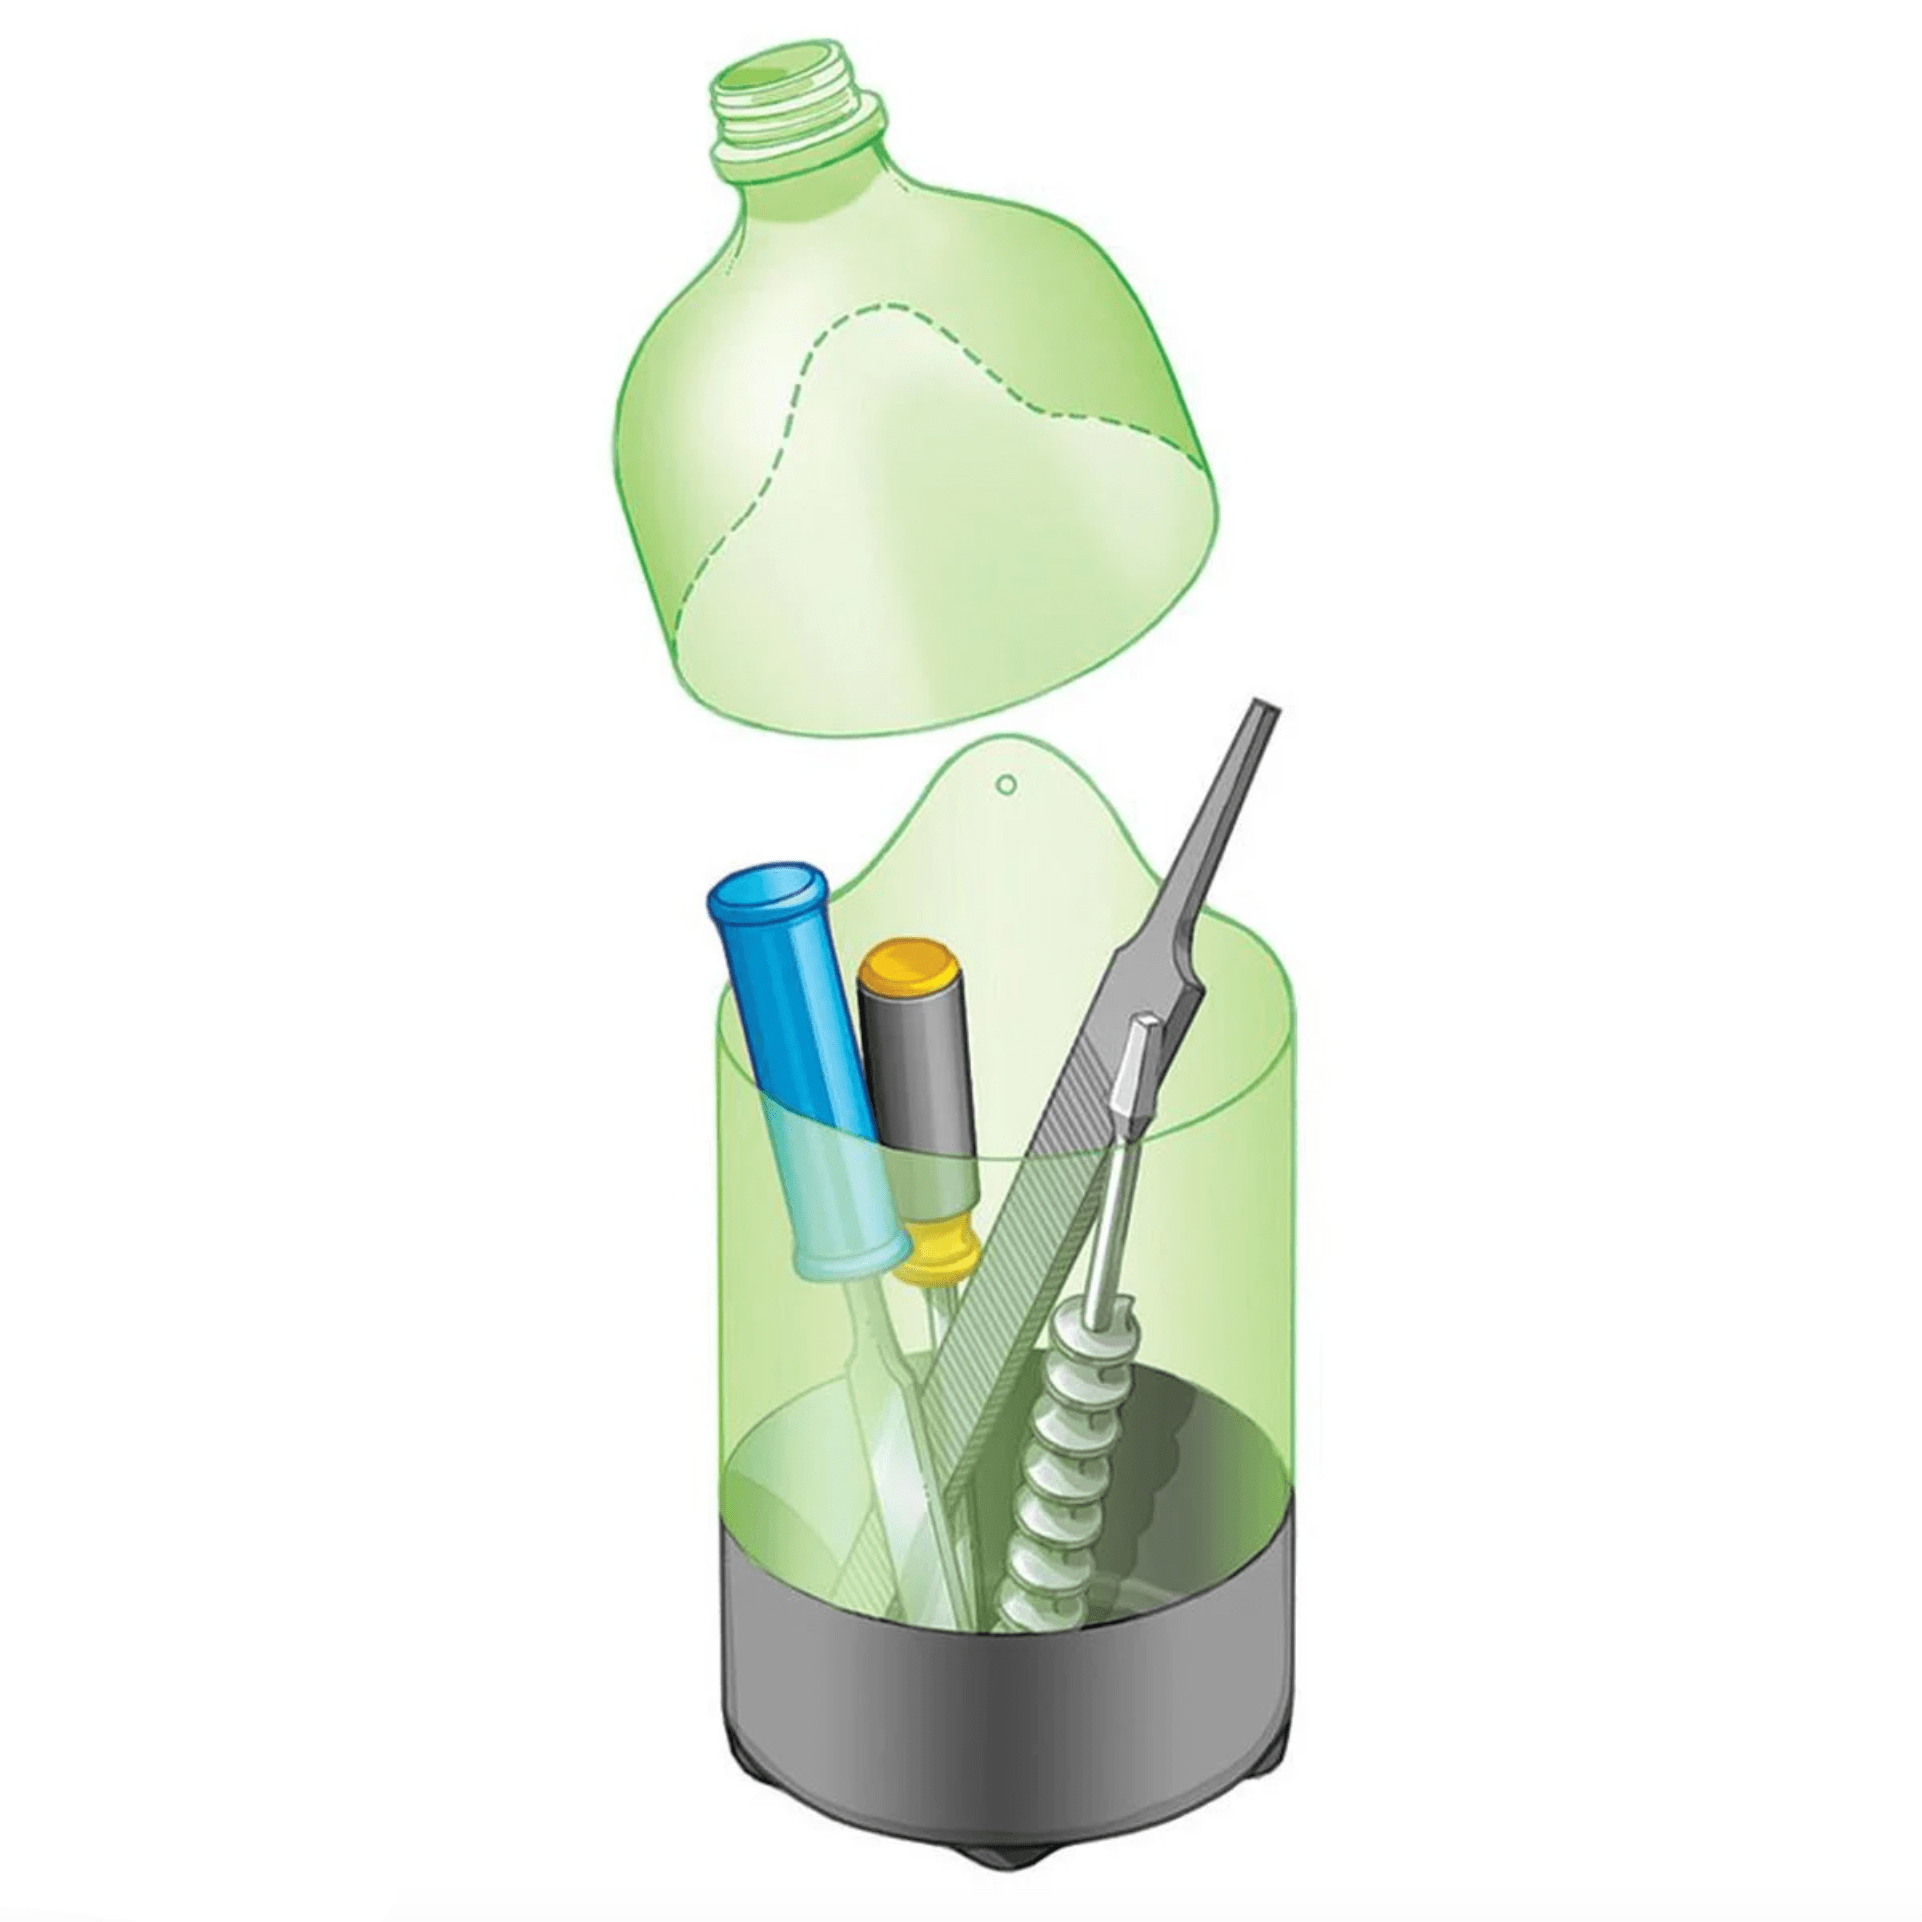 Instant Tool Holder in plastic bottle